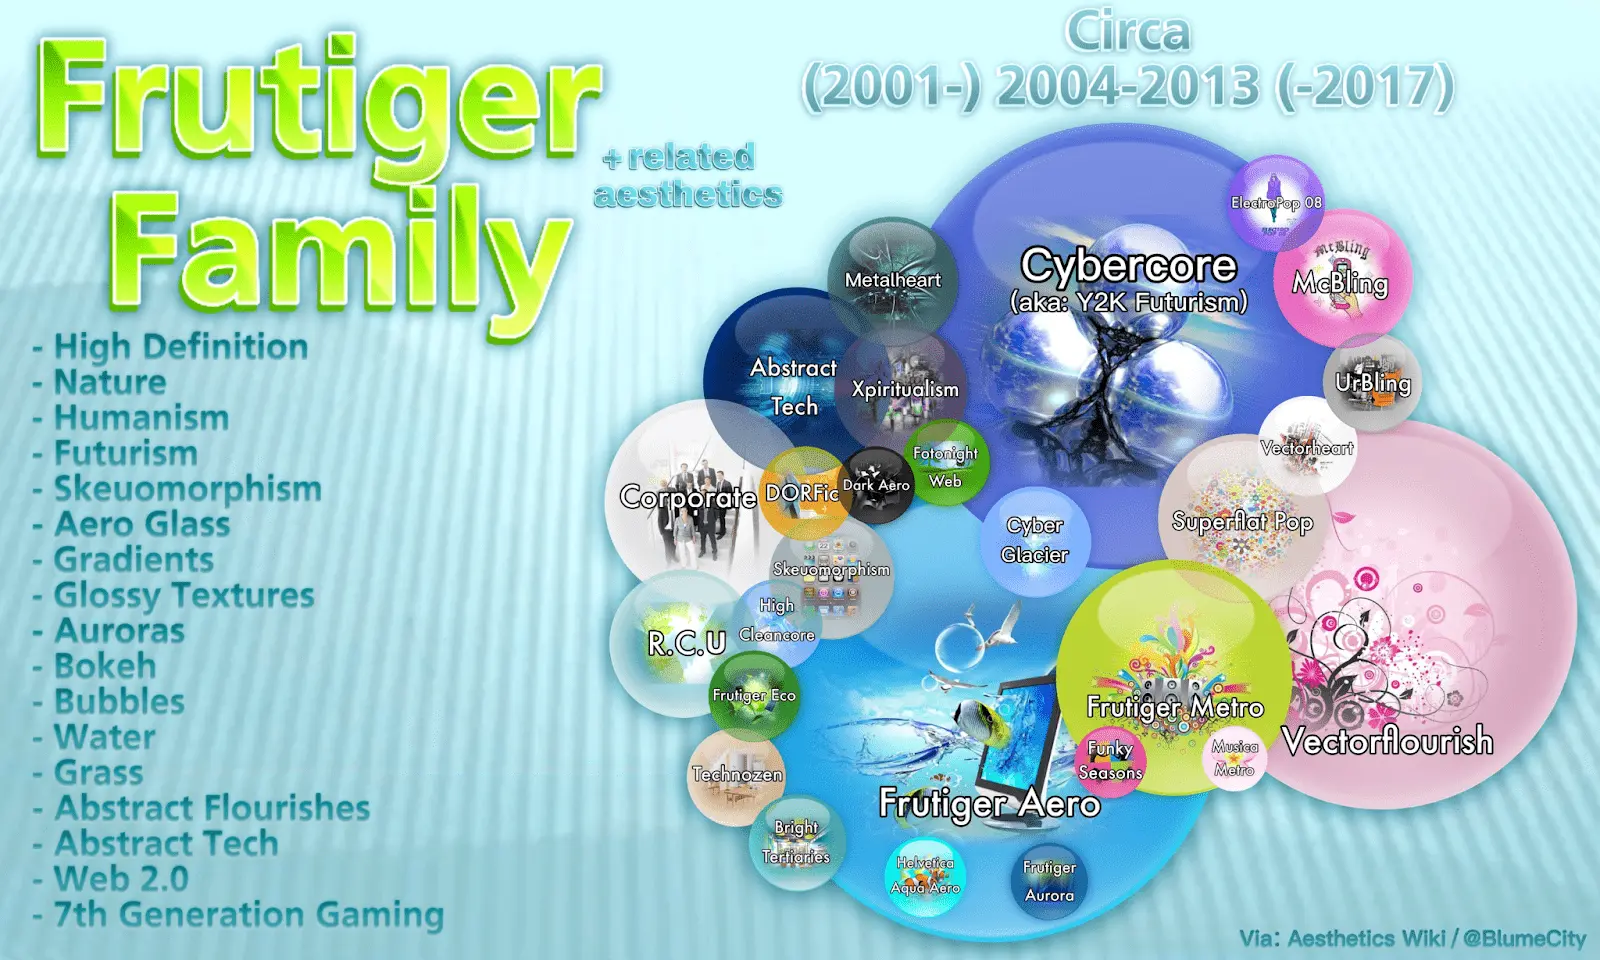 Un diagrama que muestra los diversos subgéneros y estéticas relacionadas dentro de la familia Frutiger Aero